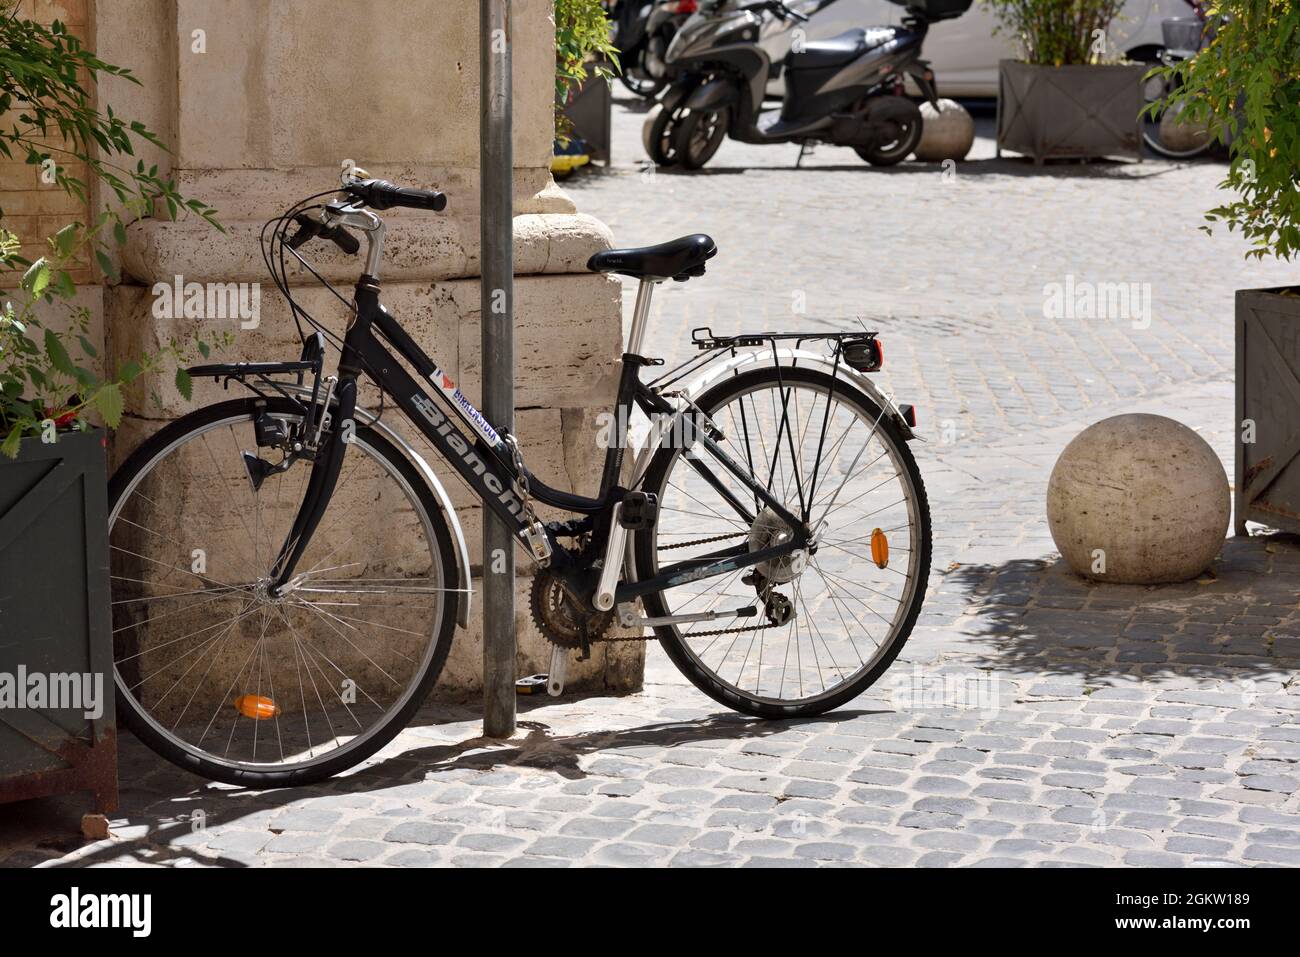 Italy, Rome, Piazza della Pigna, bike parked Stock Photo